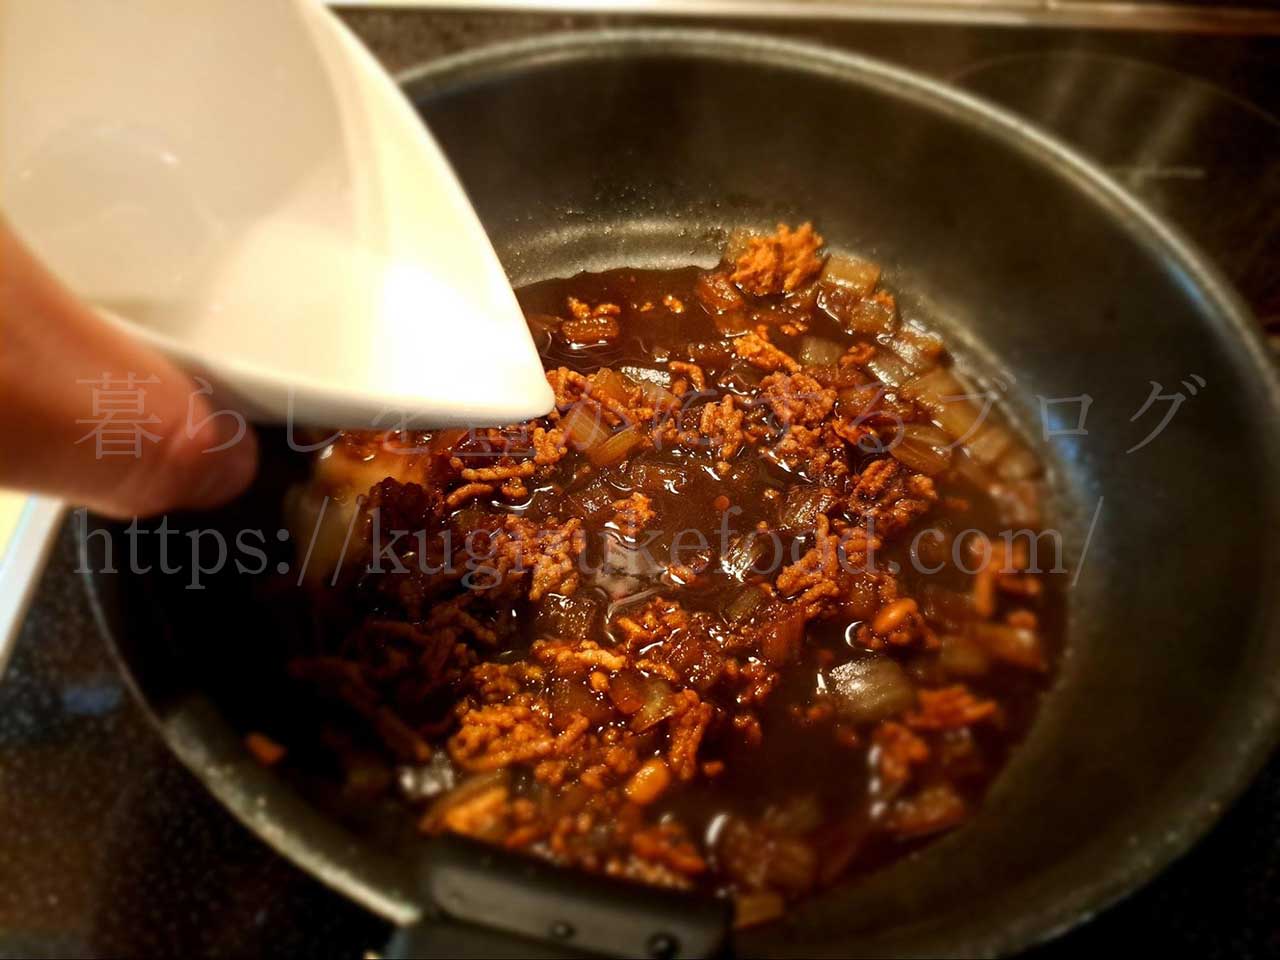 発酵食品腸活レシピ「納豆の油揚げ包み」